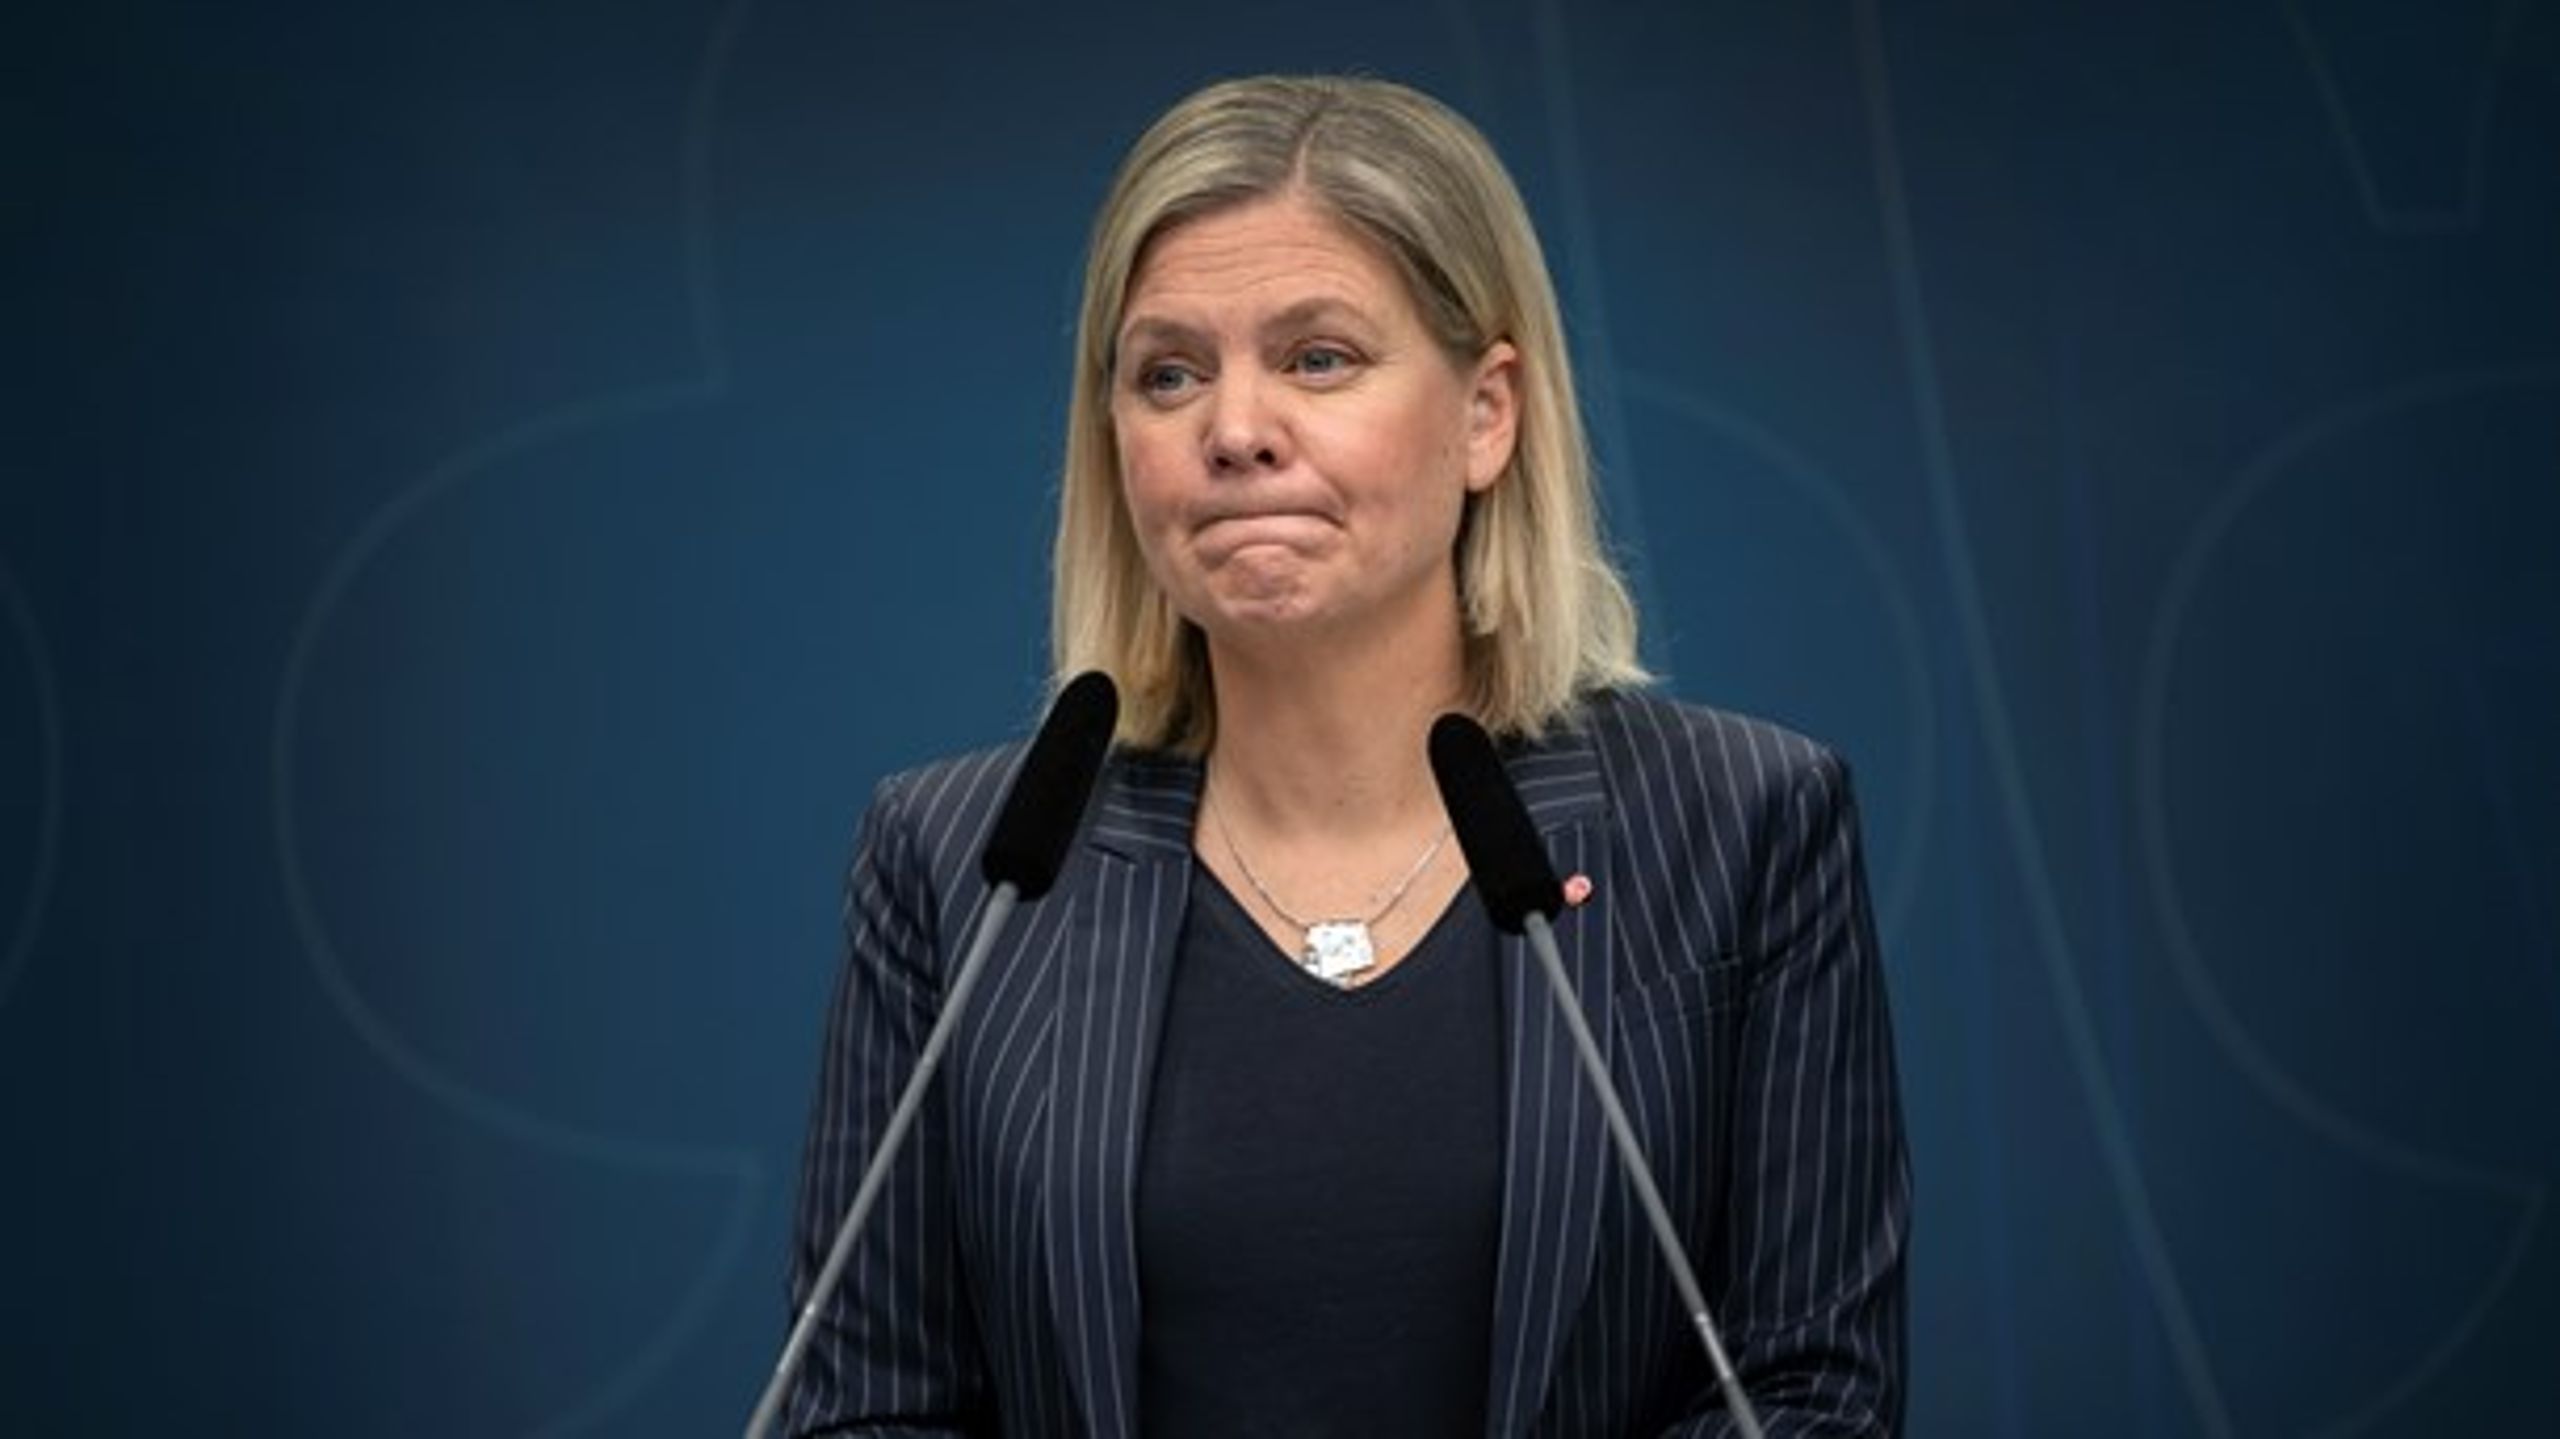 Finansministern höll en pressträff i går med anledning av bedömningen av coronavirusets ekonomiska effekter för Sverige.